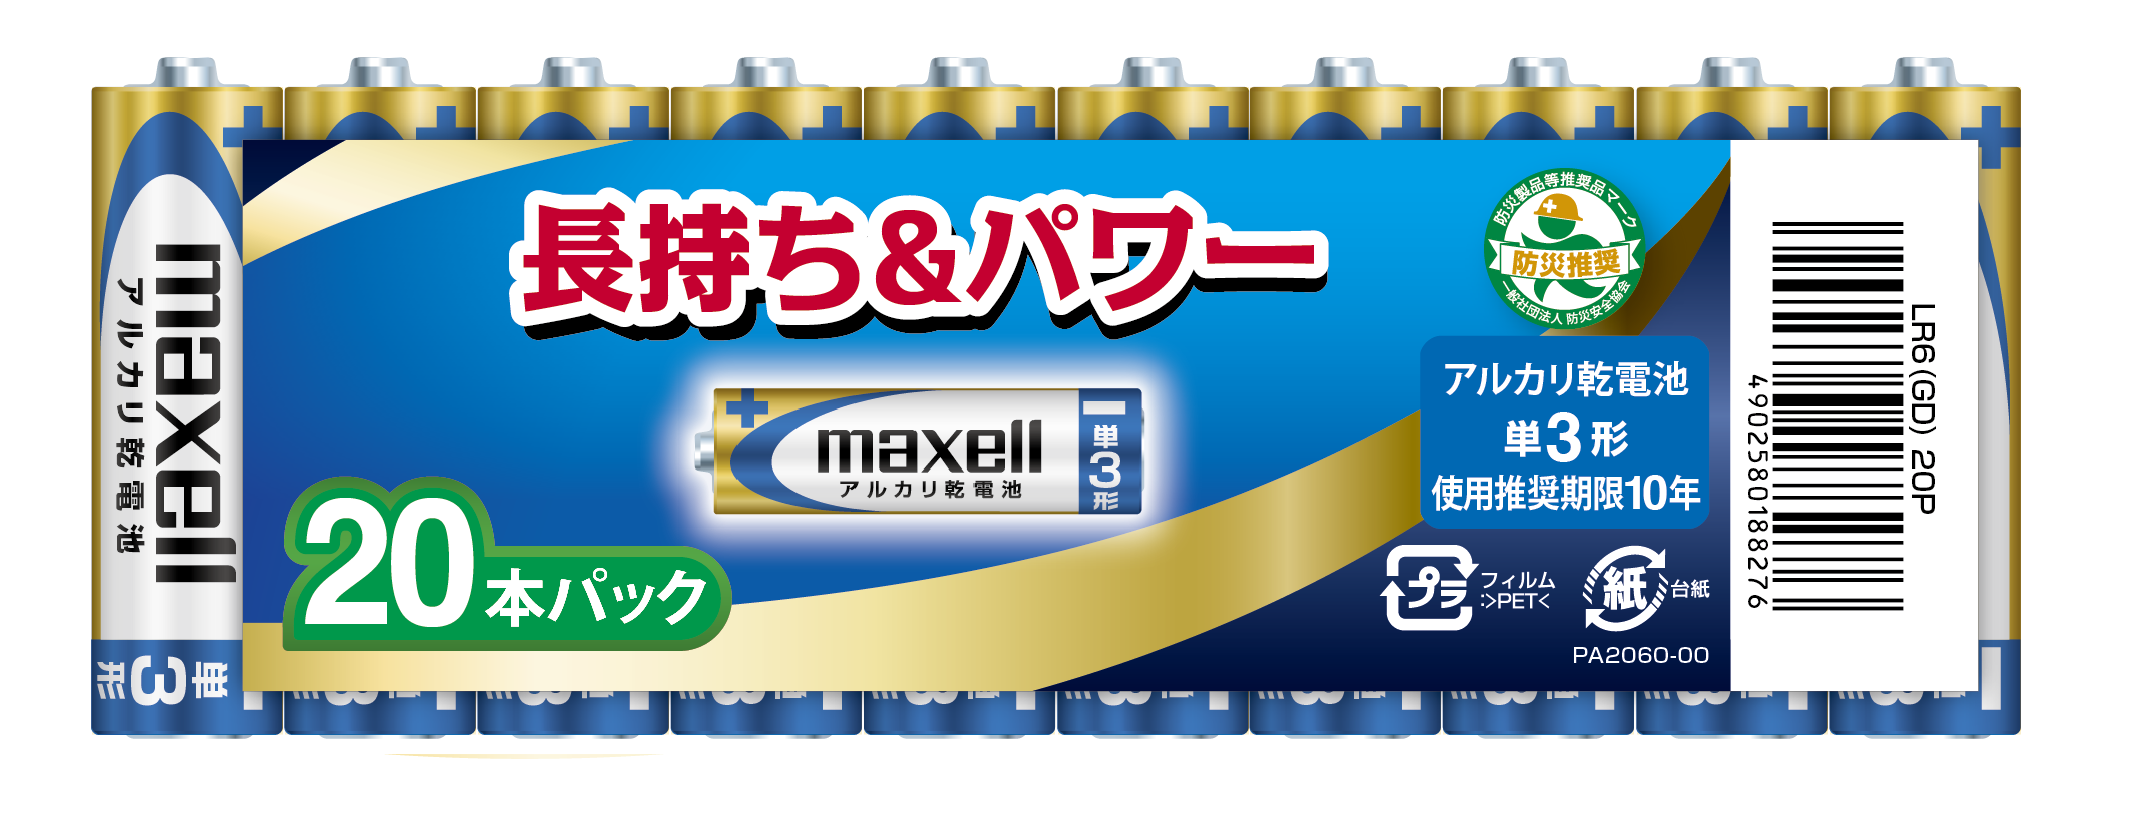 マクセル maxell アルカリ乾電池 単3形 (20本パック) LR6(GD)20P